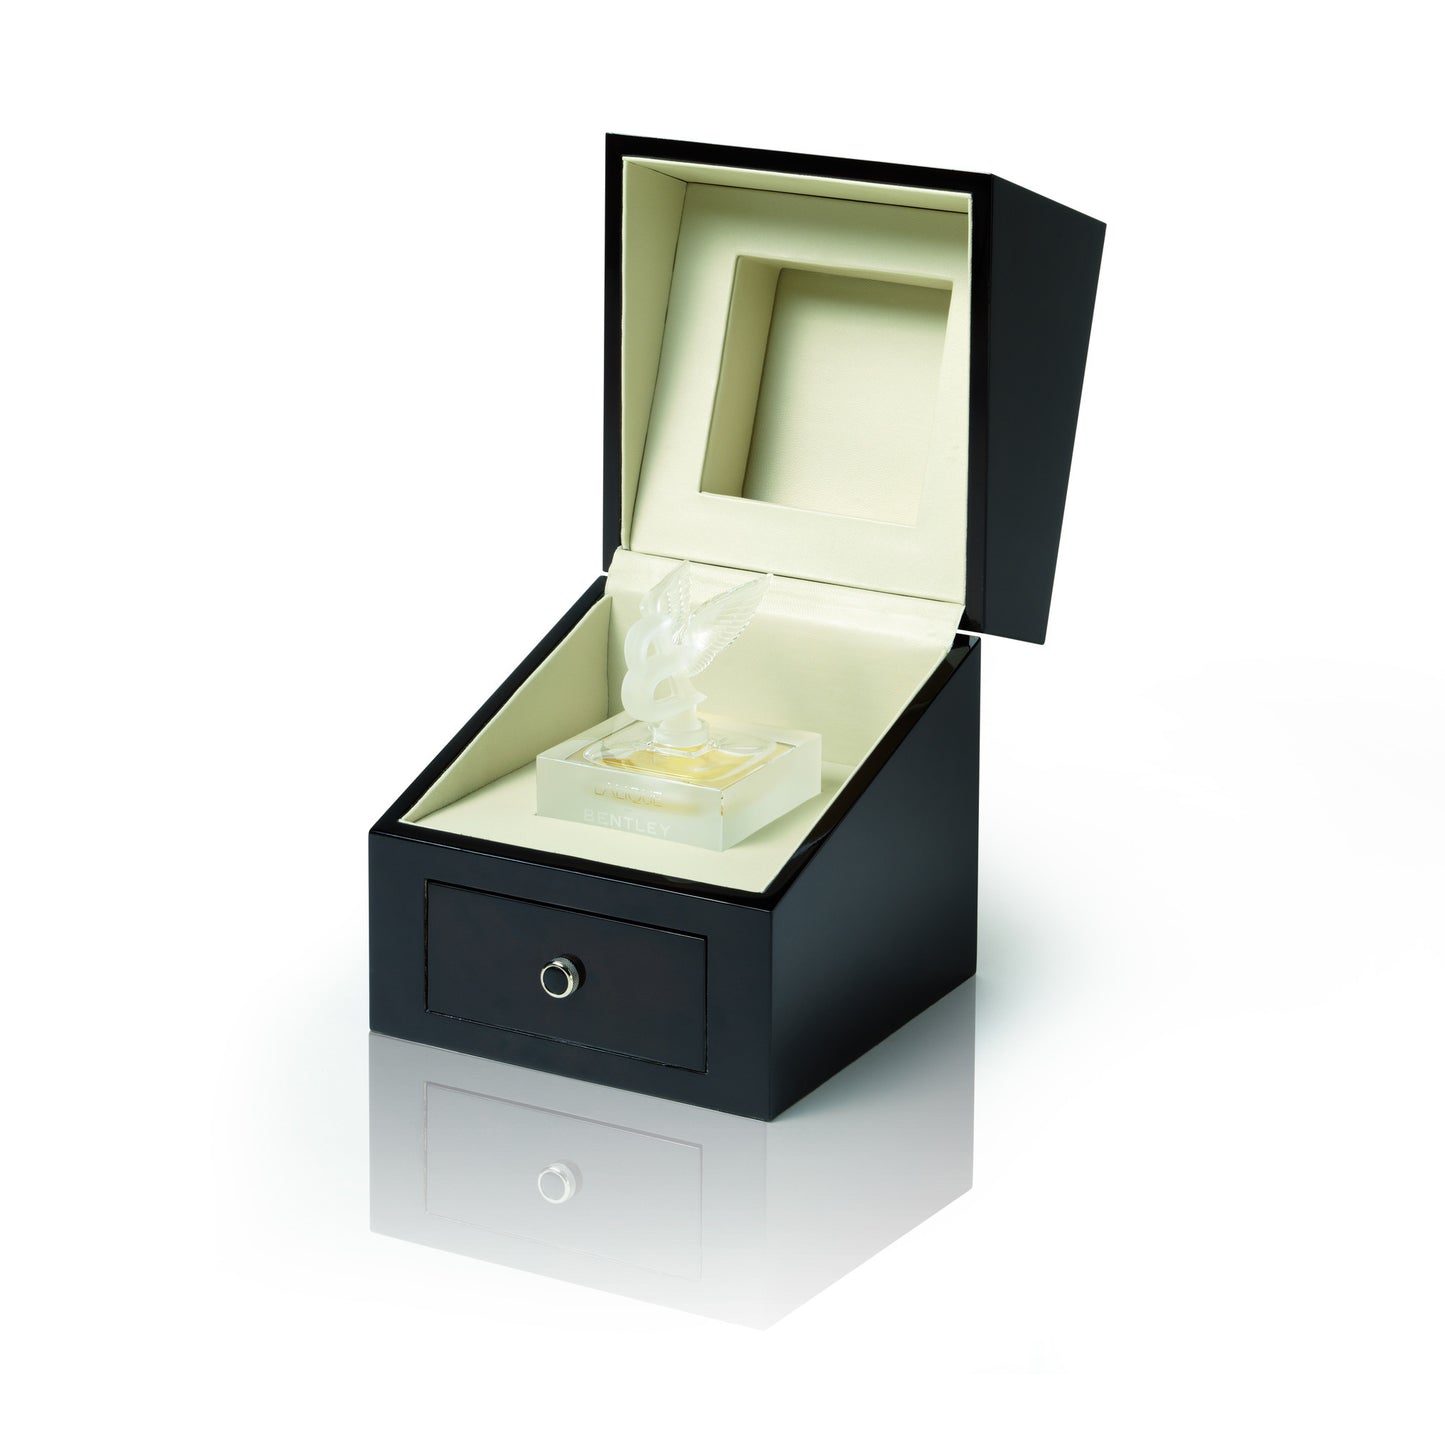 Lalique For Bentley 1.35 oz Crystal Flacon Eau de Parfum